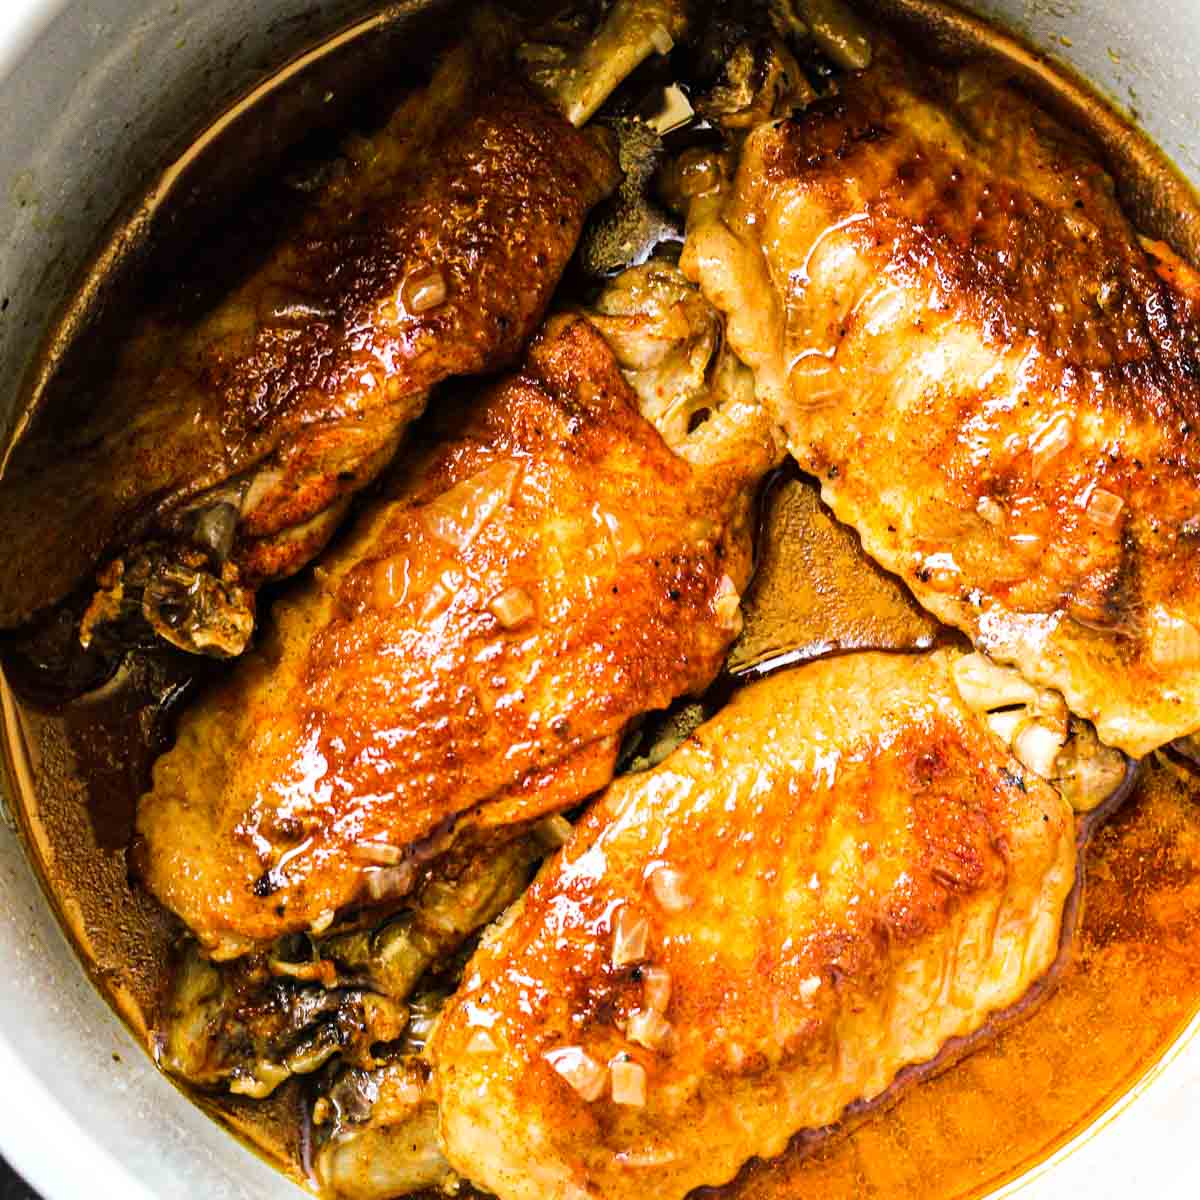 Stuffed Turkey Wings  America's Test Kitchen Recipe